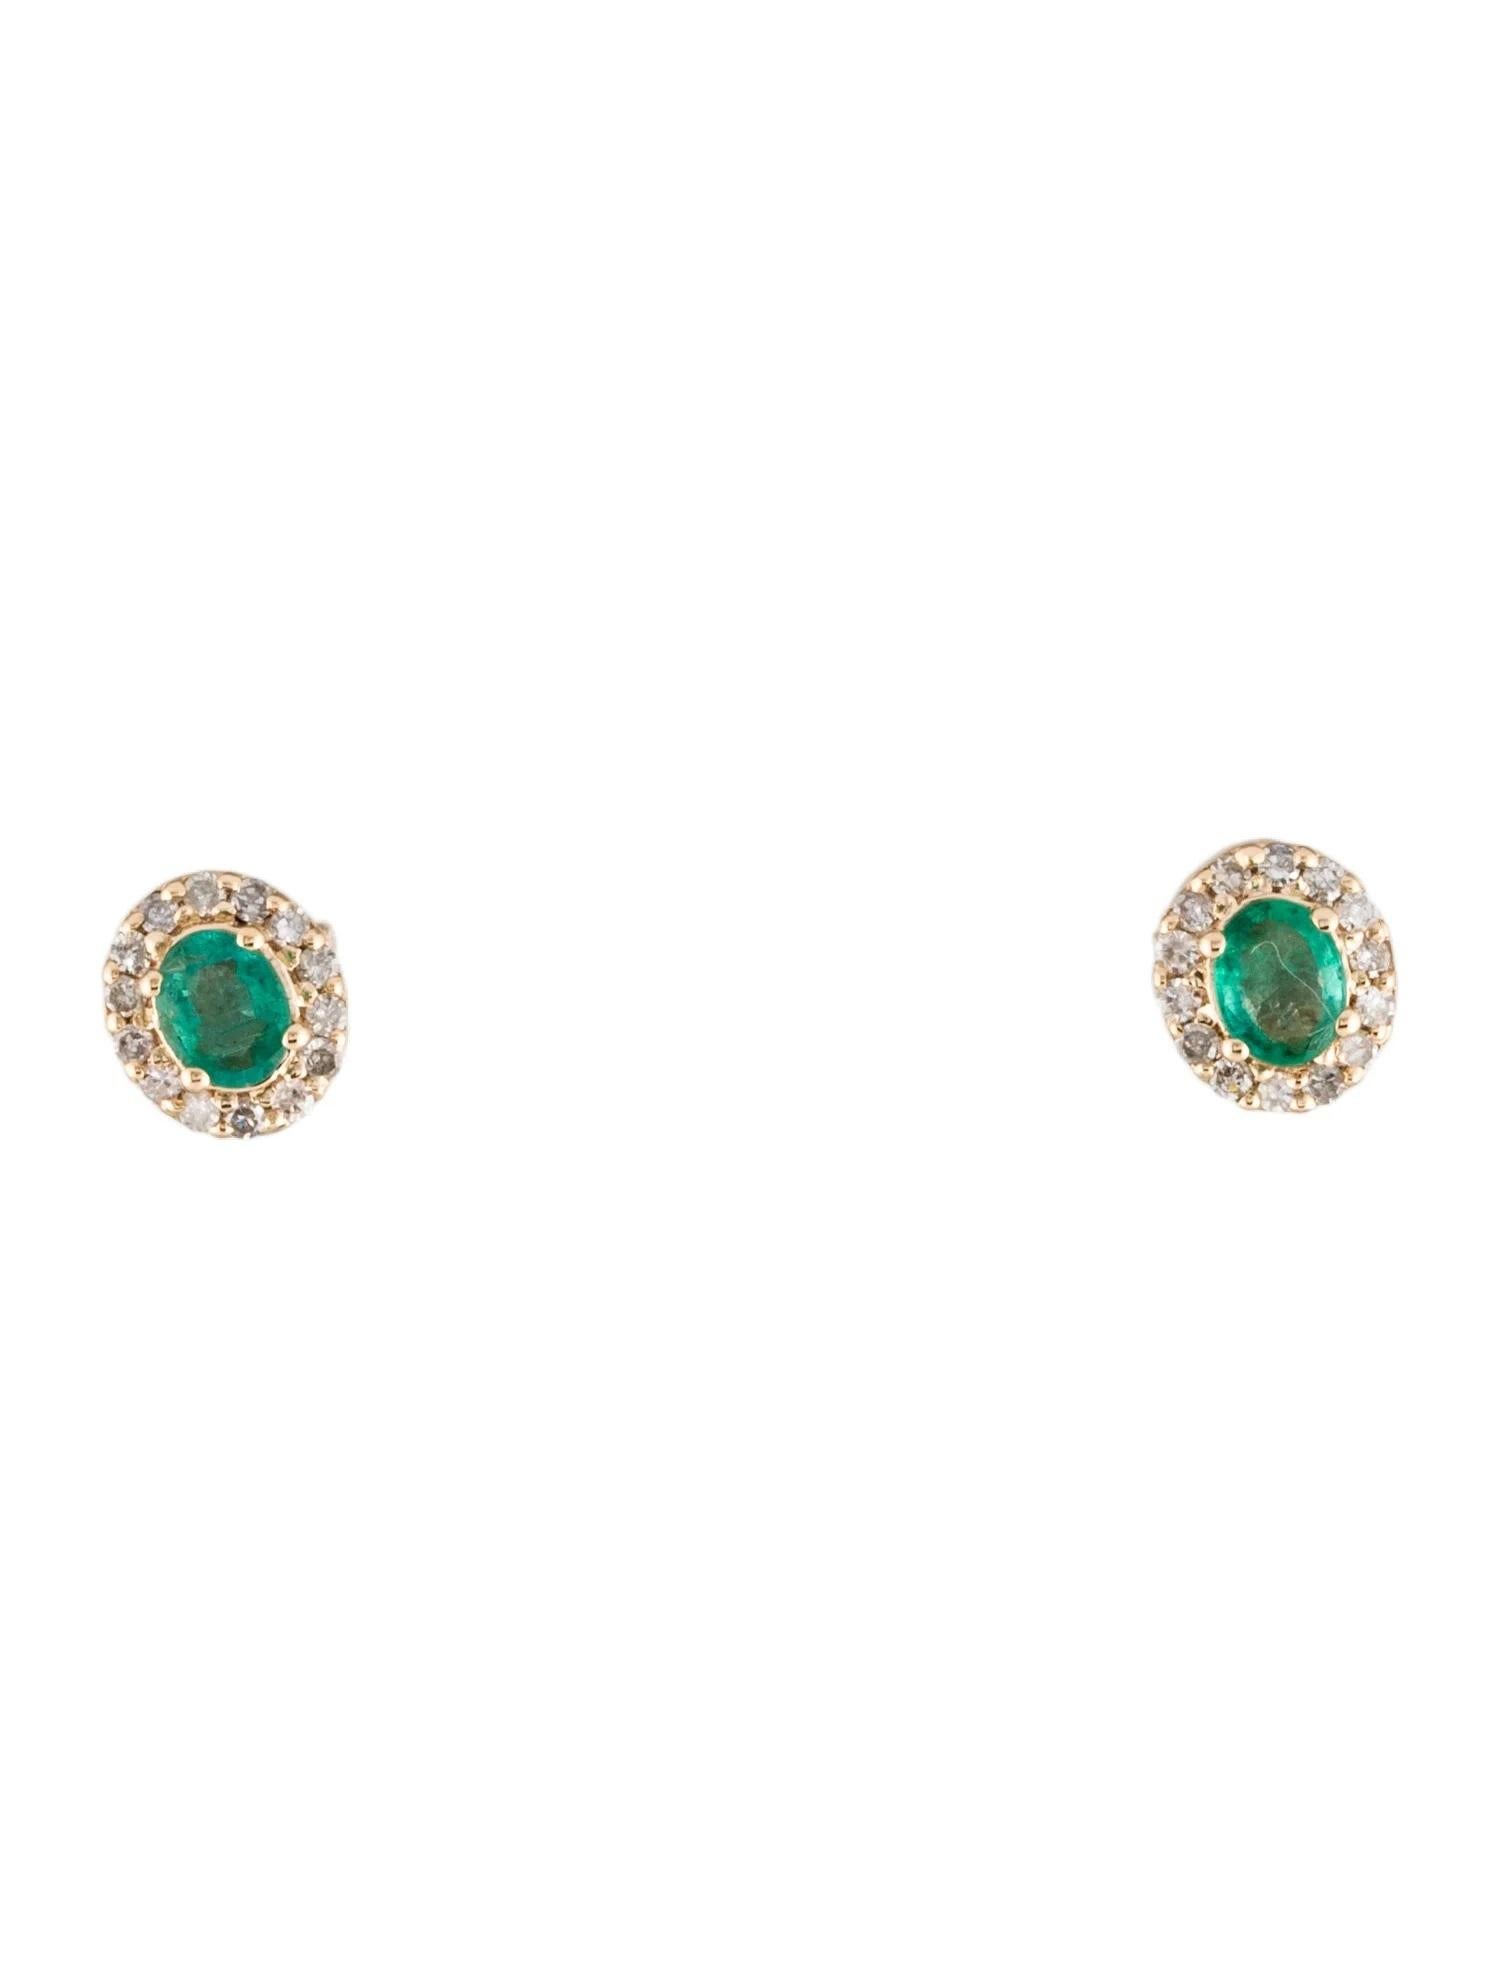 Emerald Cut 14K Emerald & Diamond Stud Earrings - 0.47 Carat Oval Brilliant Emerald, 0.30 Ca